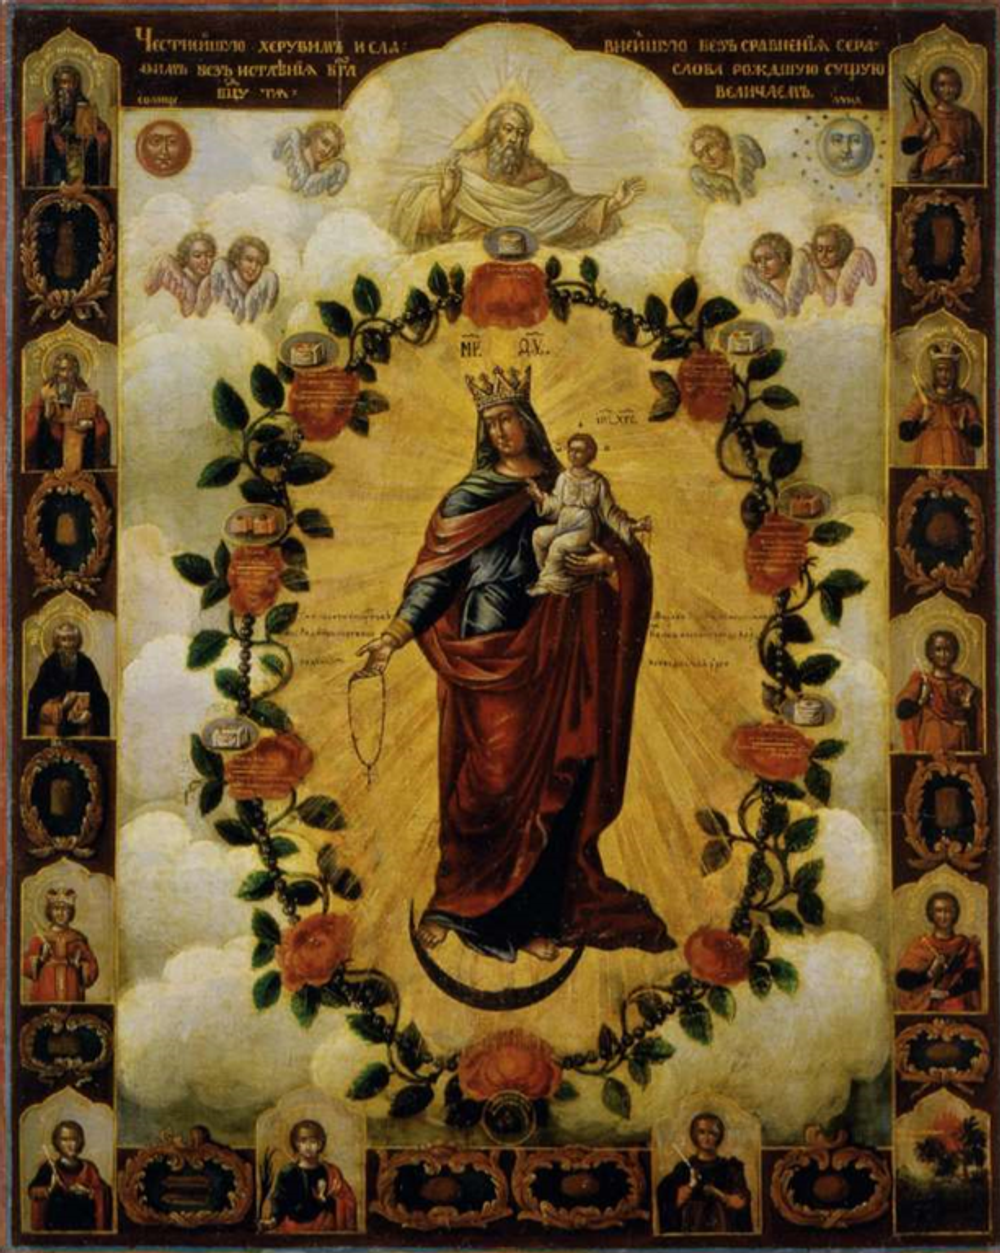 Икона Богородицы Честнейшая Херувим на дереве на левкасе мастерская Иконный Дом